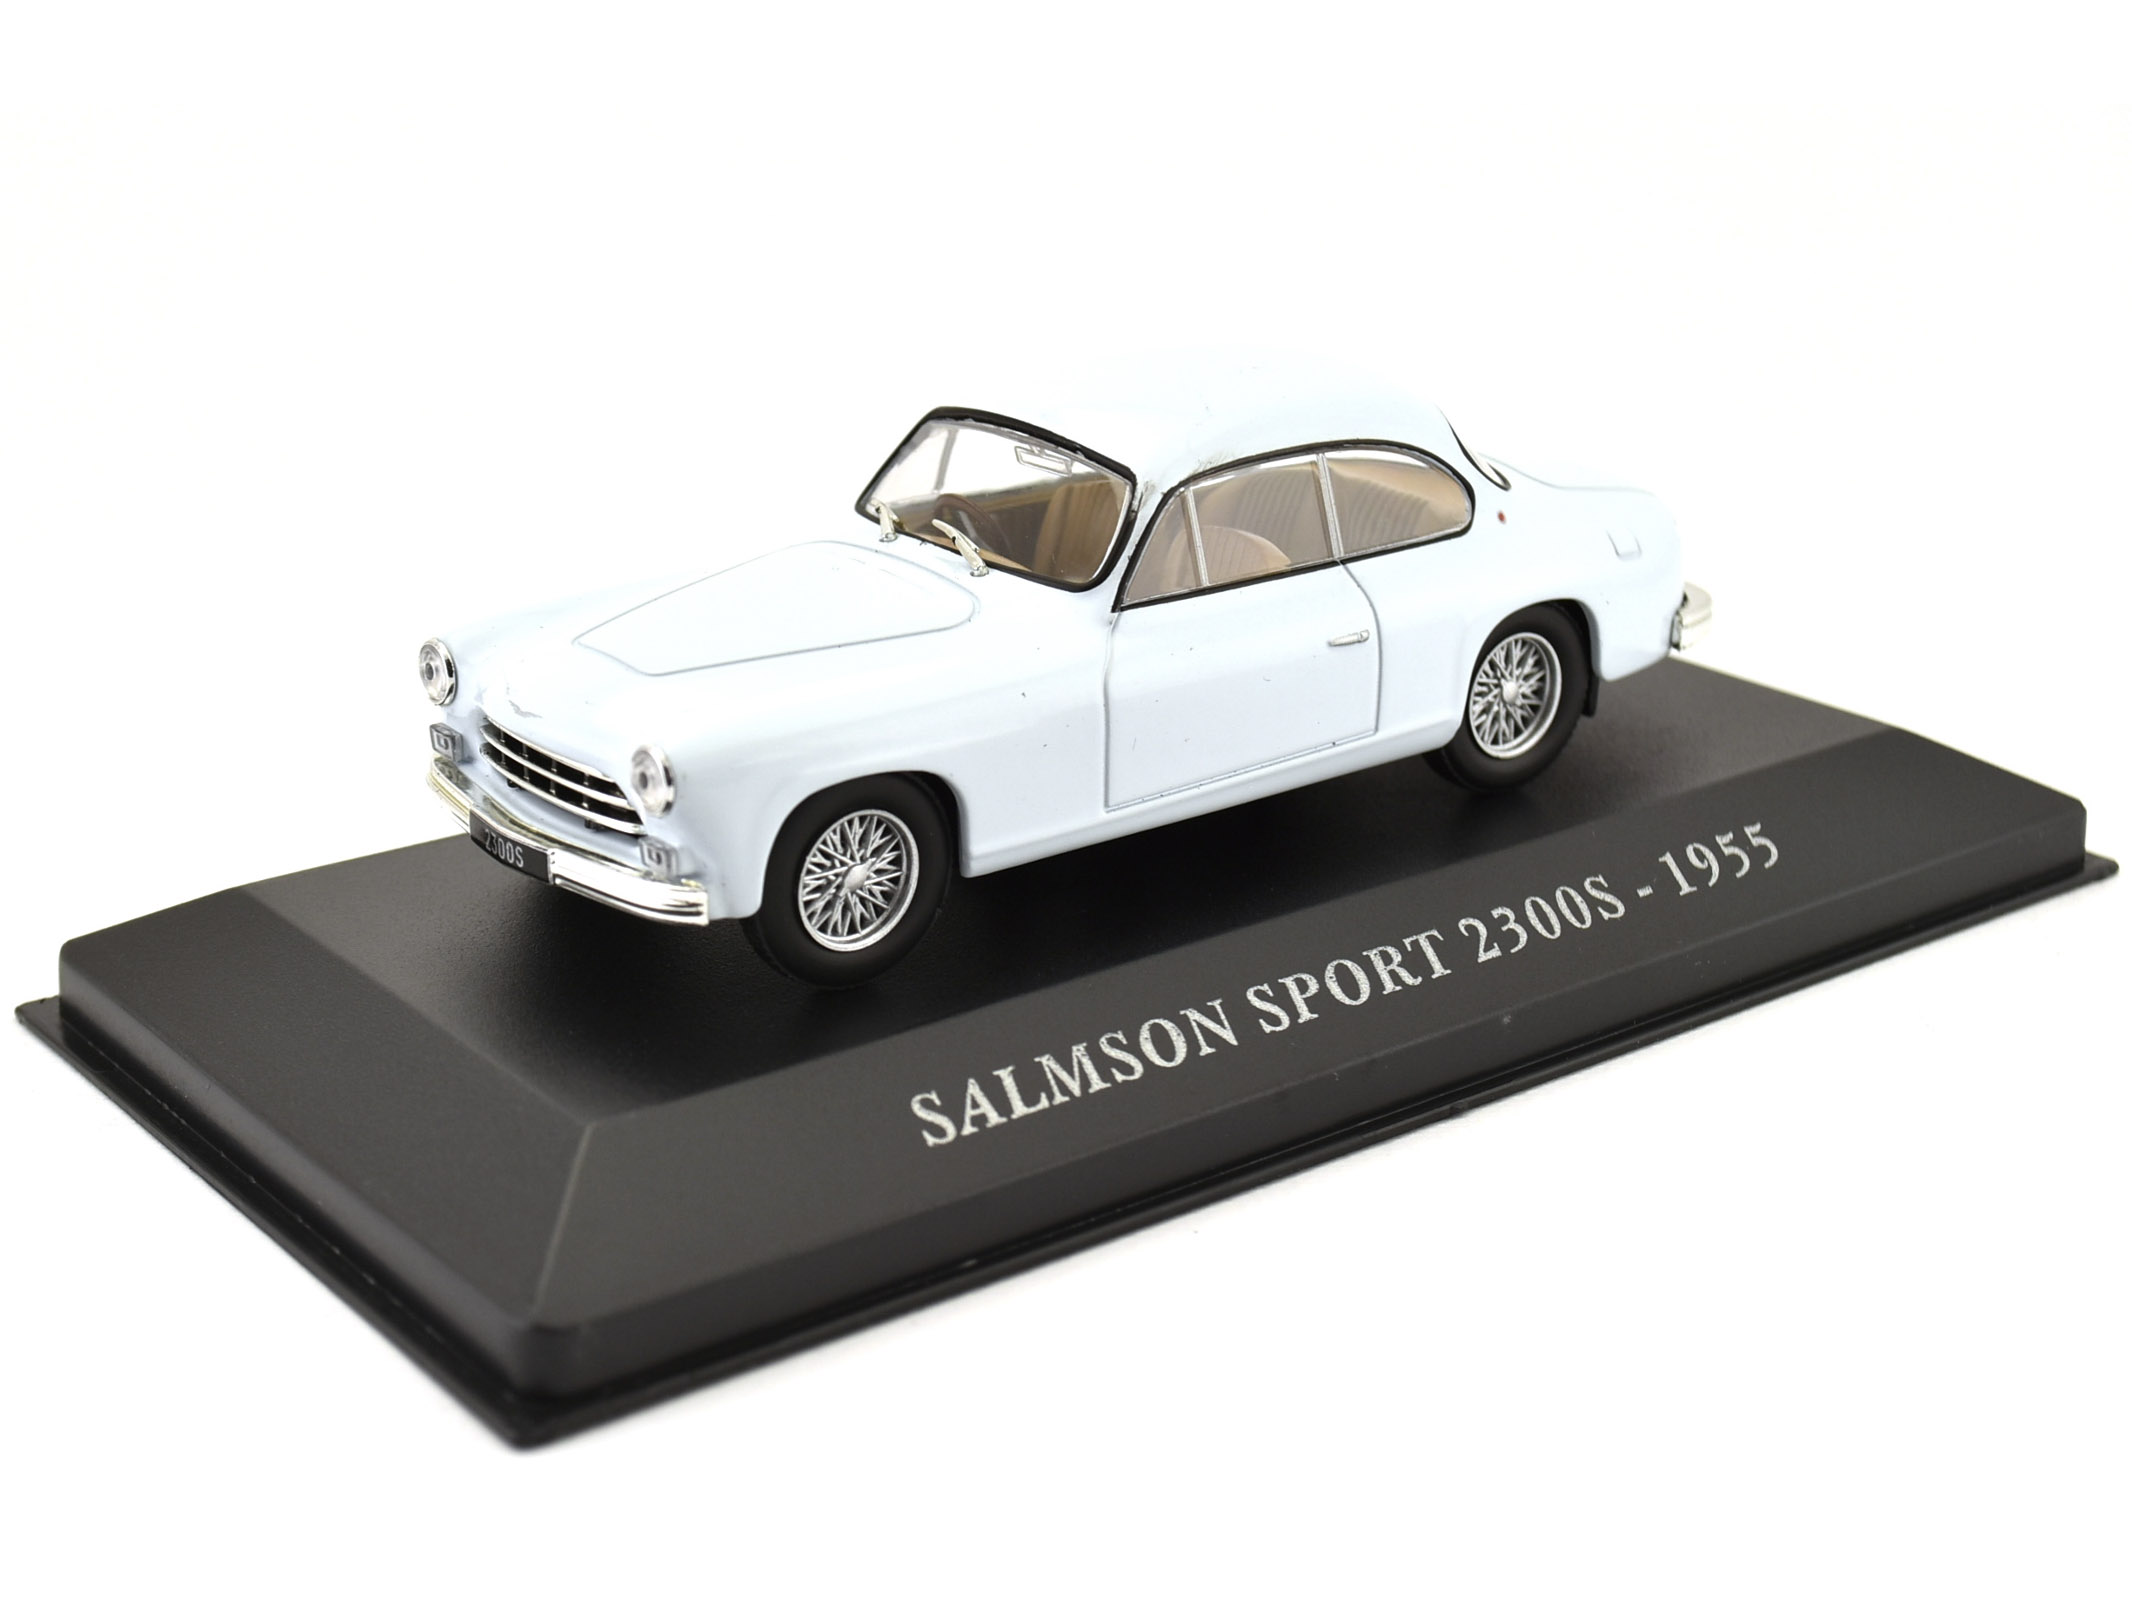 SALMSON SPORT 2300S - 1955